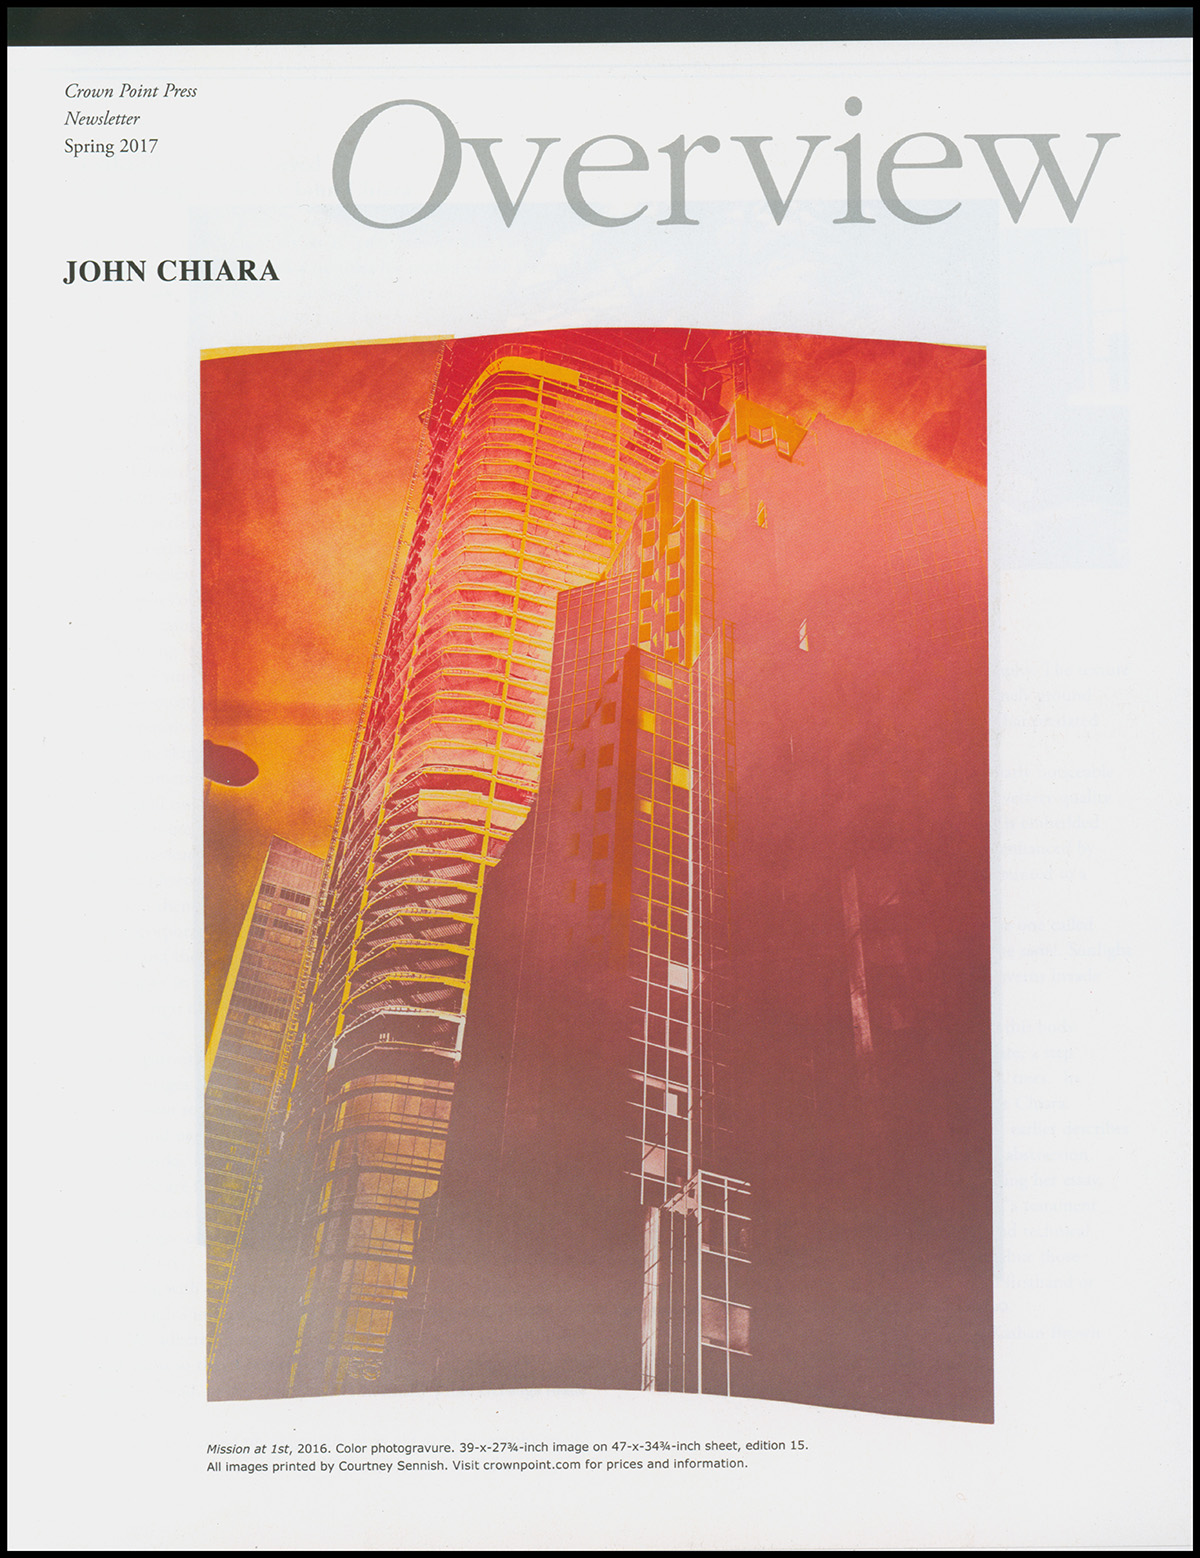 Brown, Kathan - Overview: John Chiara (Crown Point Press)